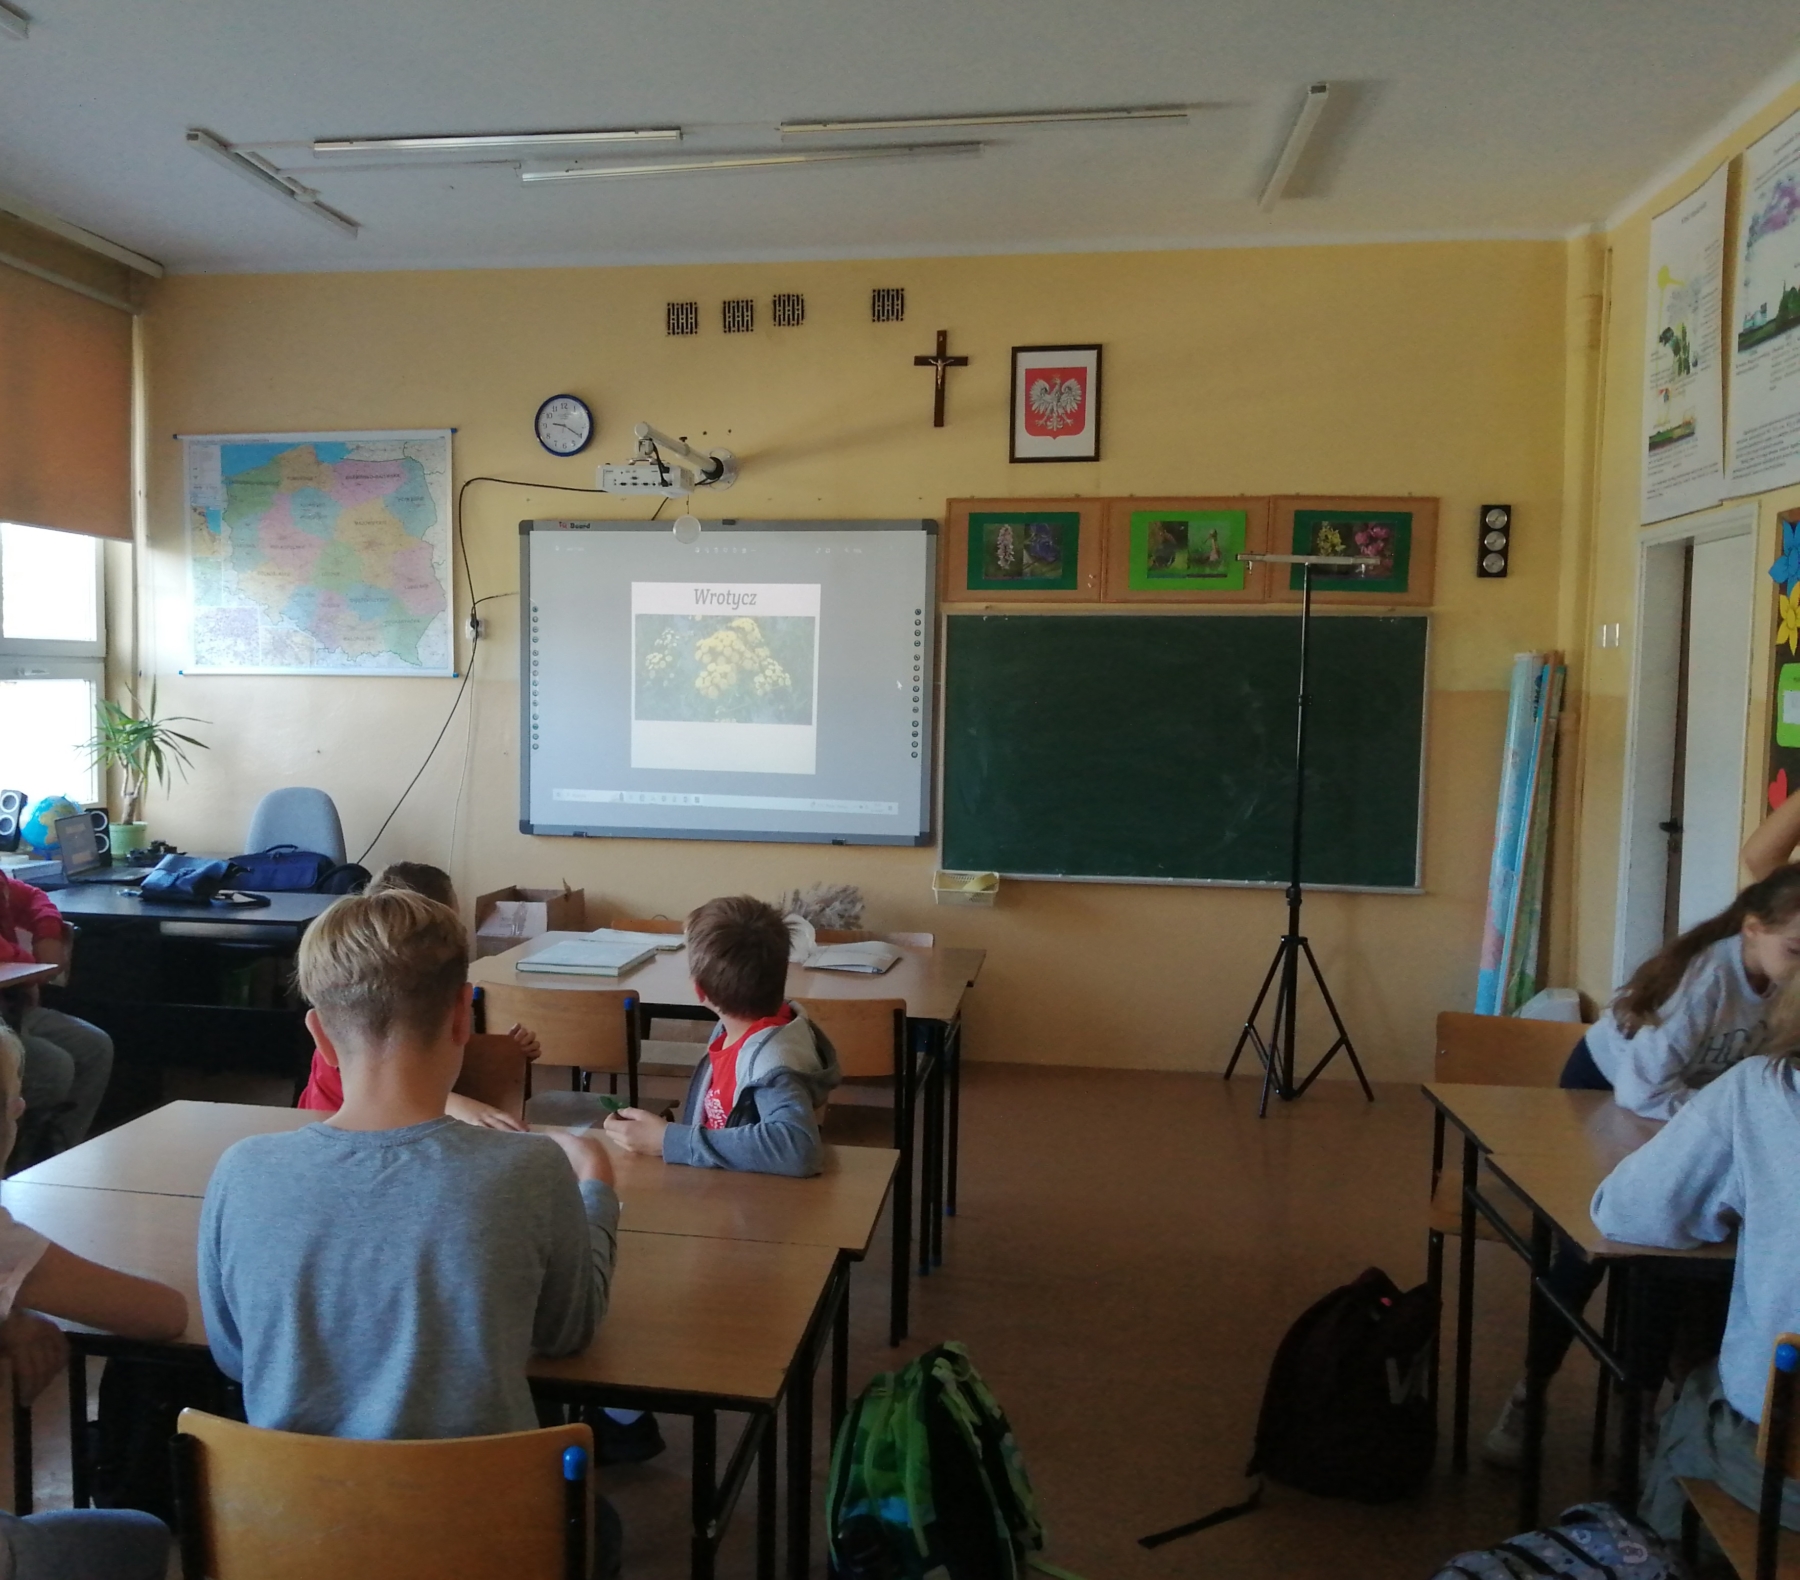 Uczniowie w klasie oglądają prezentację dotyczącą roślin